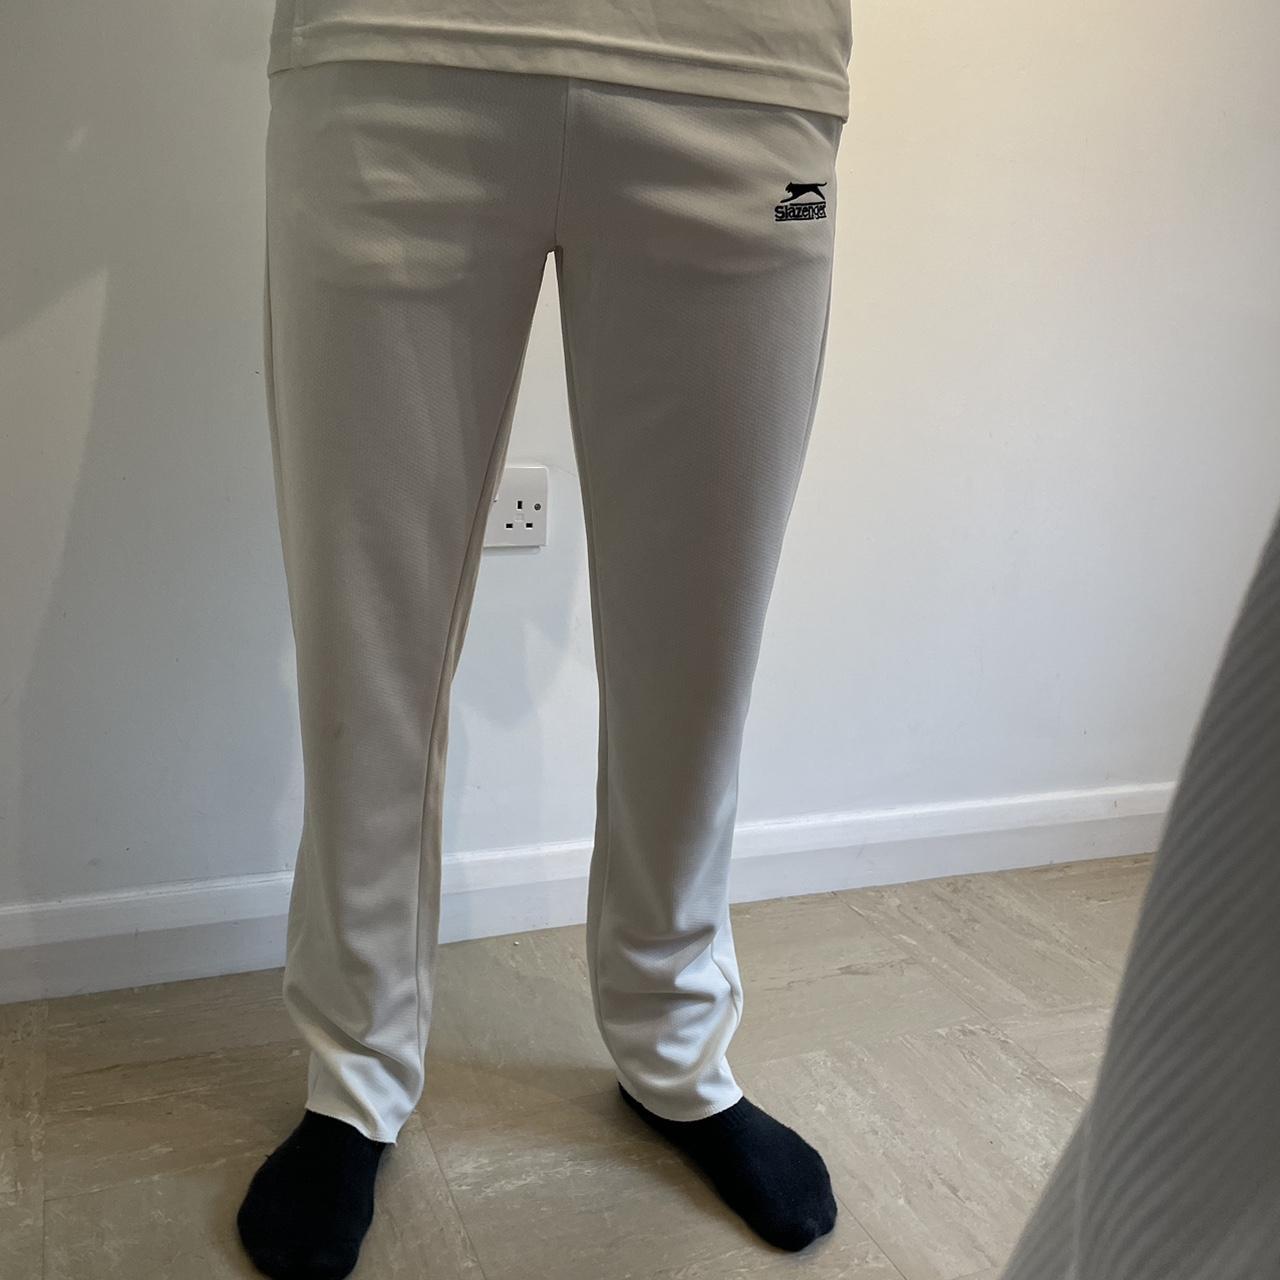 Slazenger Cricket Trousers Mens White Size UK Medium #REF10 | eBay